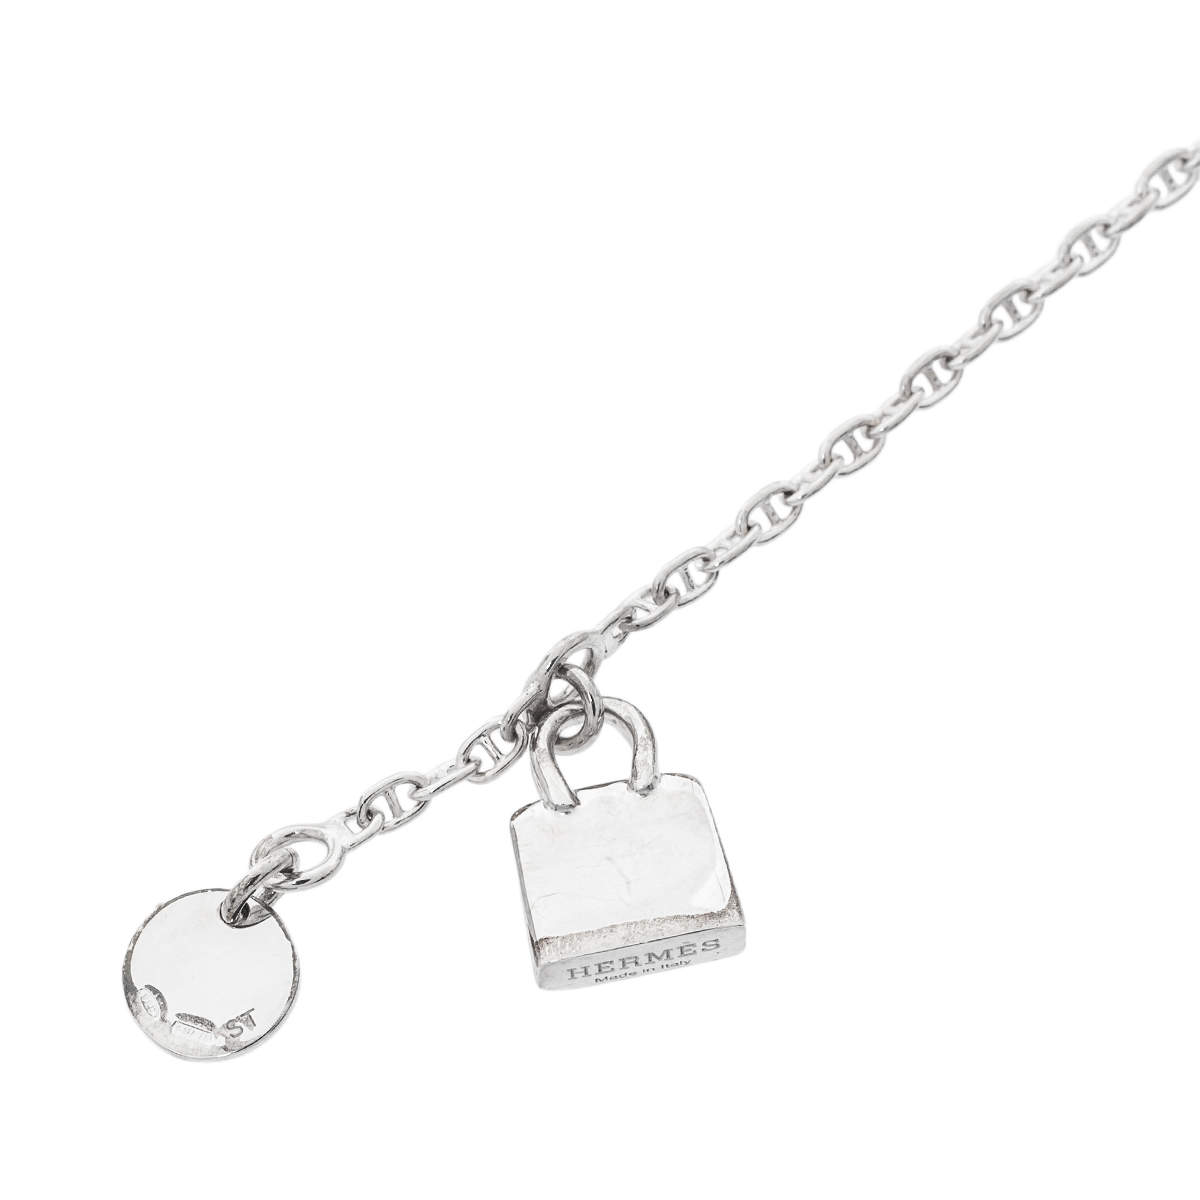 Hermès Mini Kelly Amulette Bracelet - Sterling Silver Charm, Bracelets -  HER112557